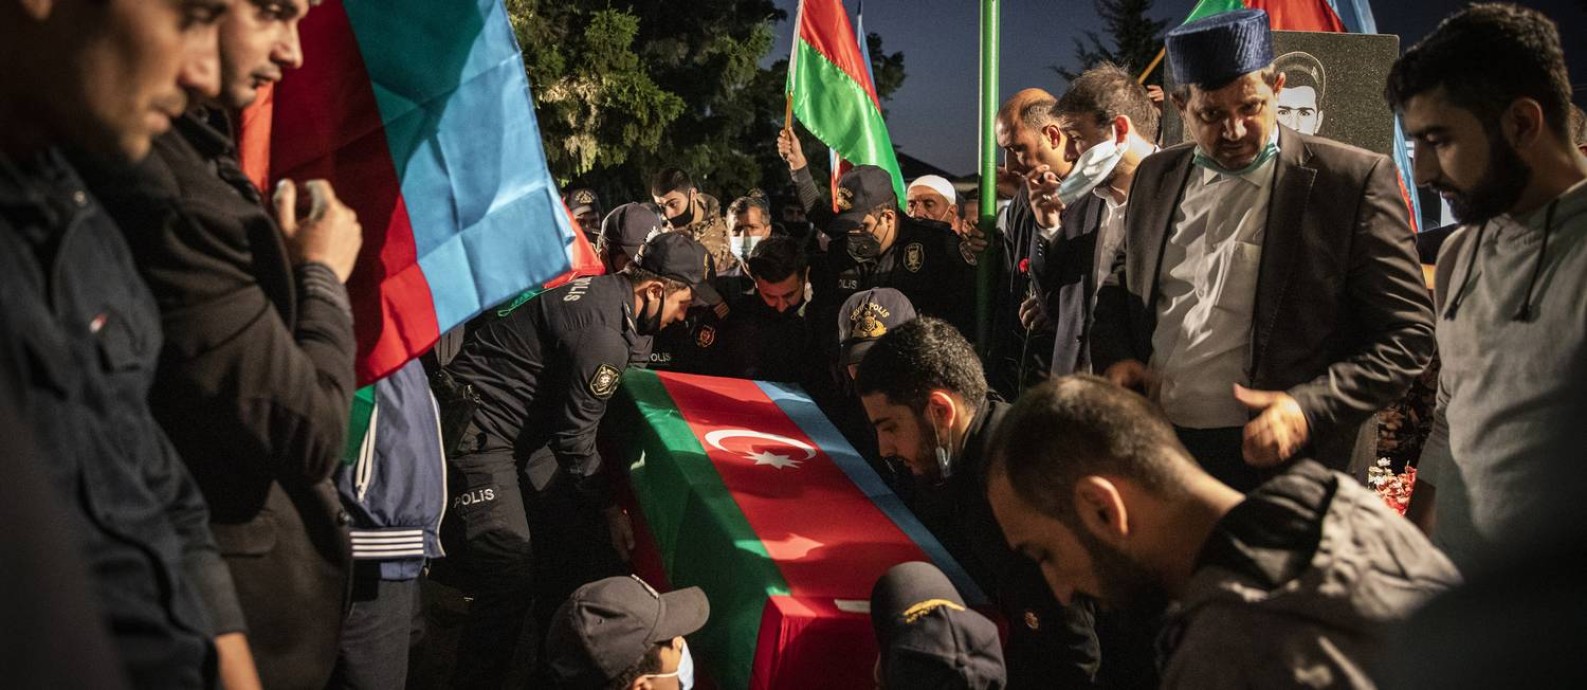 Parentes e amigos participam do funeral de Eldar Aliyev, que morreu lutando na guerra contra a Armênia, em Baku, no Azerbaijão Foto: IVOR PRICKETT / NYT/18-10-2020